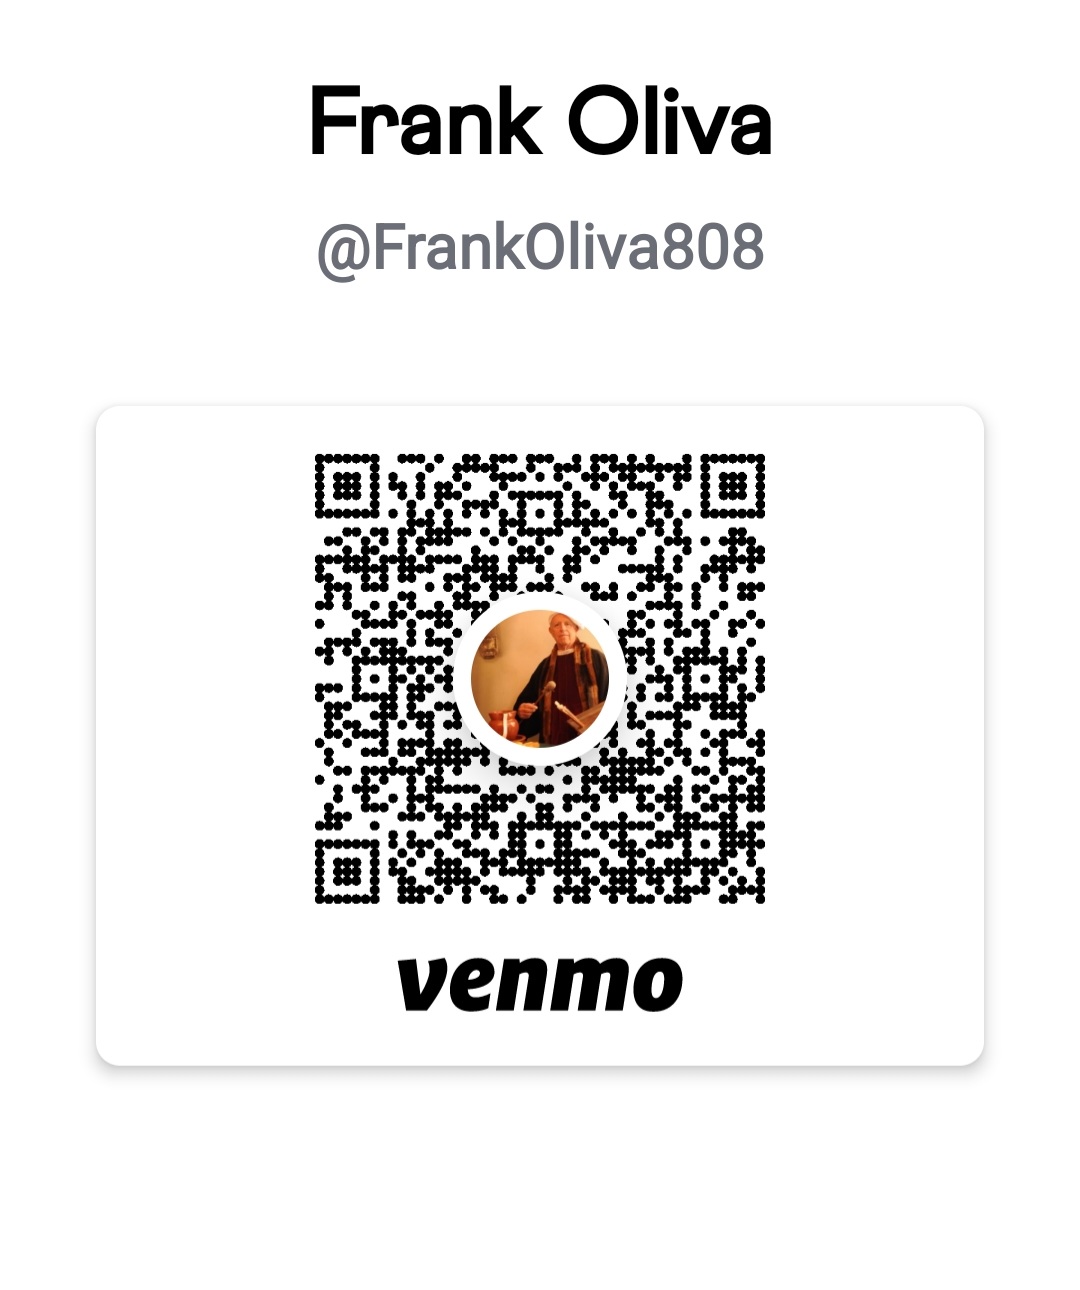 Frank Oliva's Venmo tag